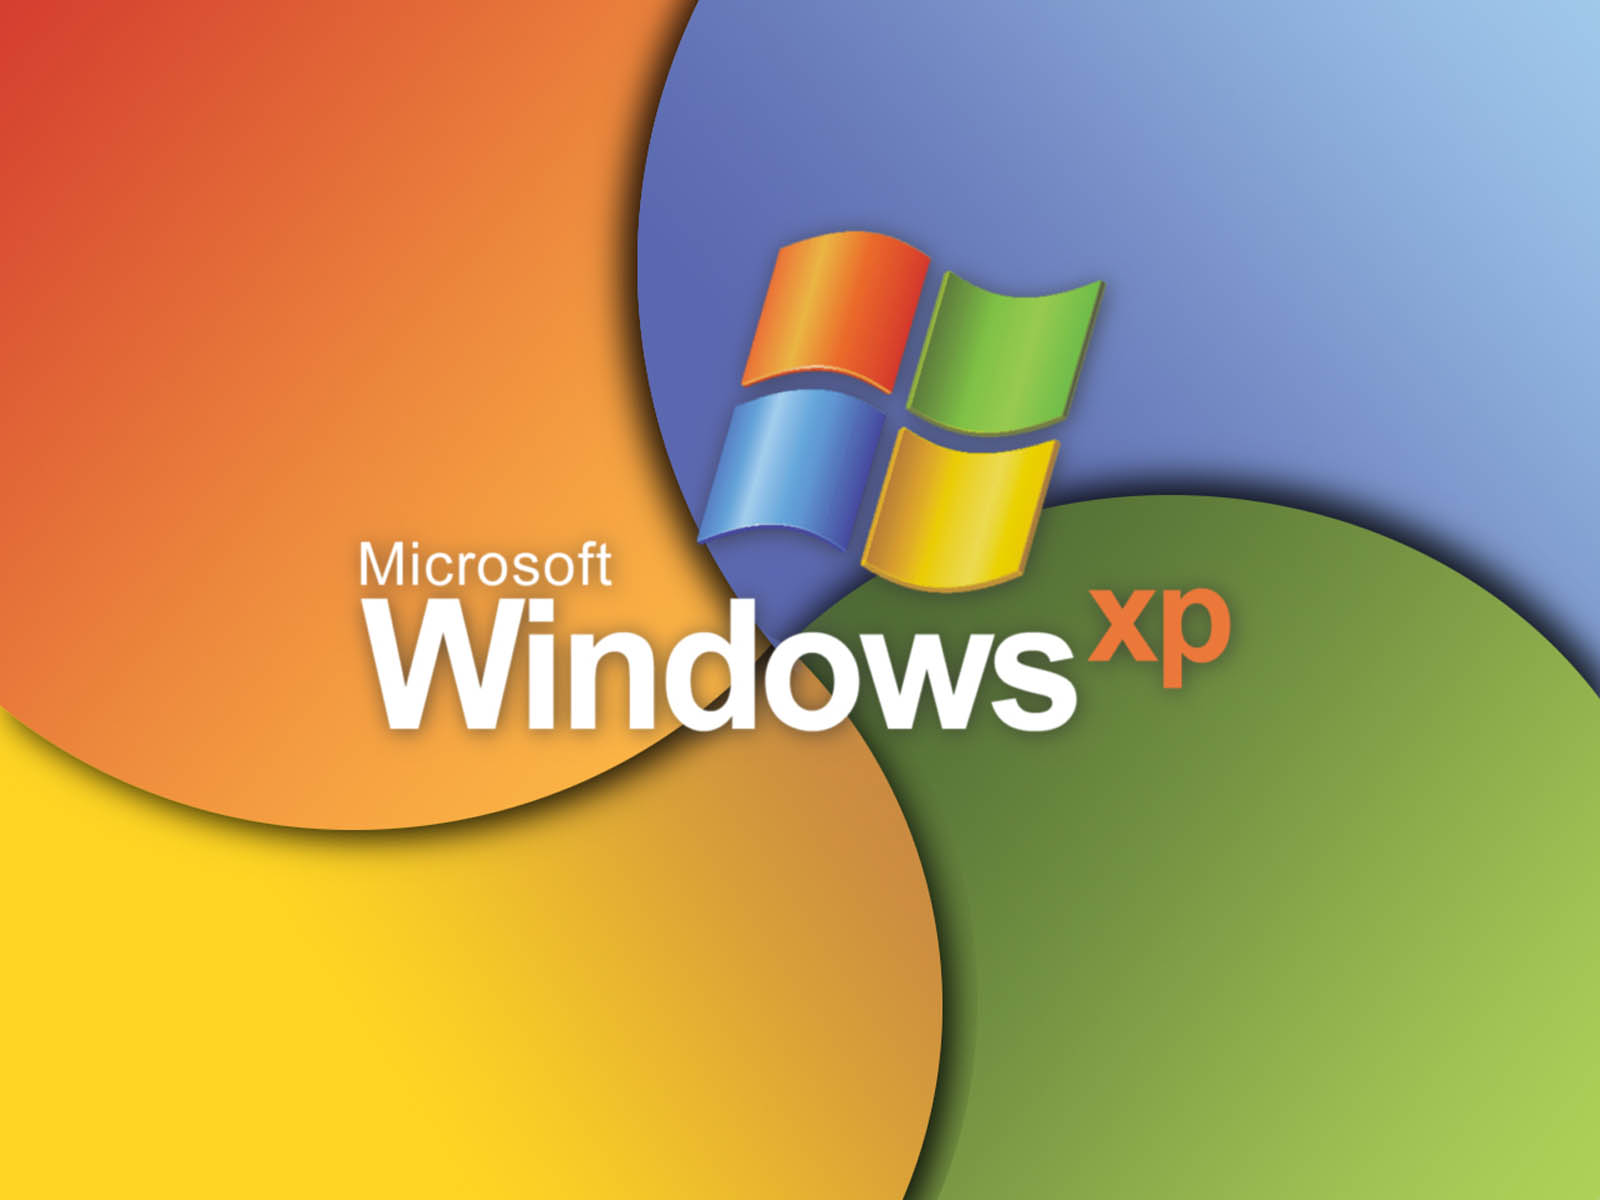 Bạn đang tìm kiếm một hình nền Windows XP đẹp HD miễn phí để tạo nên không gian làm việc thú vị và mới lạ hơn? Đừng bỏ lỡ cơ hội để sở hữu những bức ảnh đẹp và chất lượng cao nhất tại đây! Hãy cập nhật ngay hình nền Windows XP HD miễn phí để có trải nghiệm sử dụng máy tính đỉnh cao nhất!